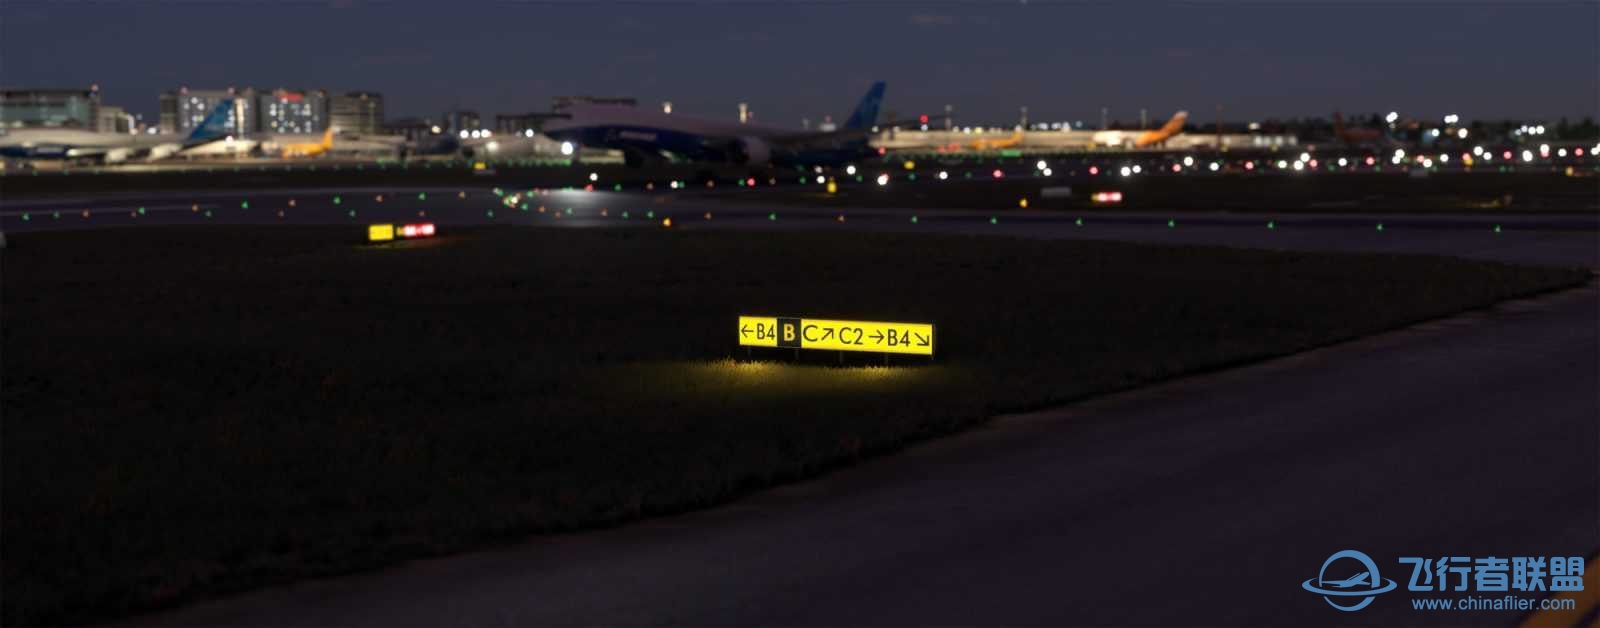 FlyTampa悉尼机场预览和加入Orbx合作计划-8651 